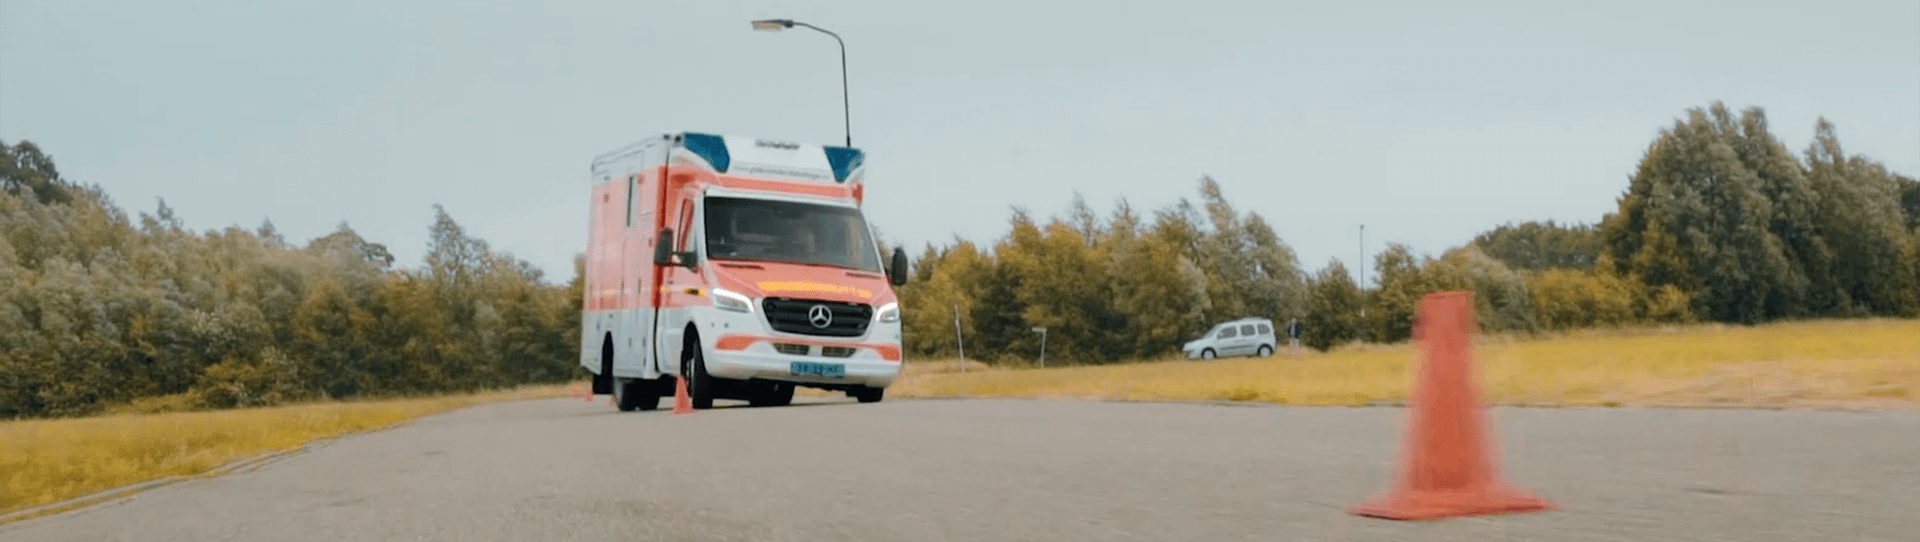 Photo : ambulance allemande slalomant entre des cônes